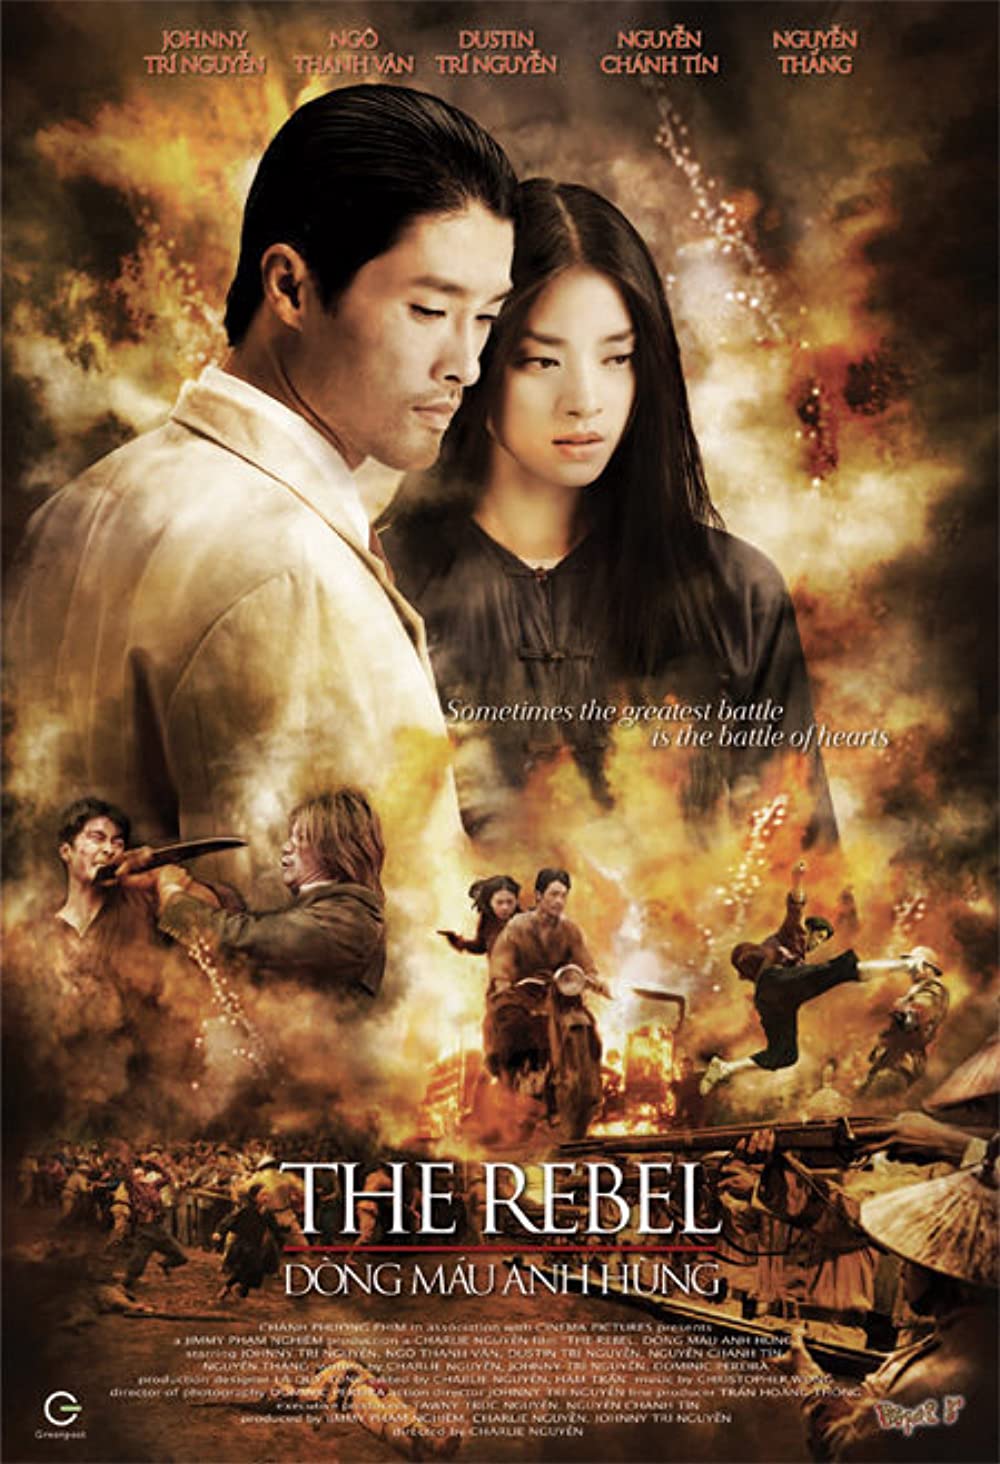 Ngô Thanh Vân phim: Dòng máu anh hùng (2007)